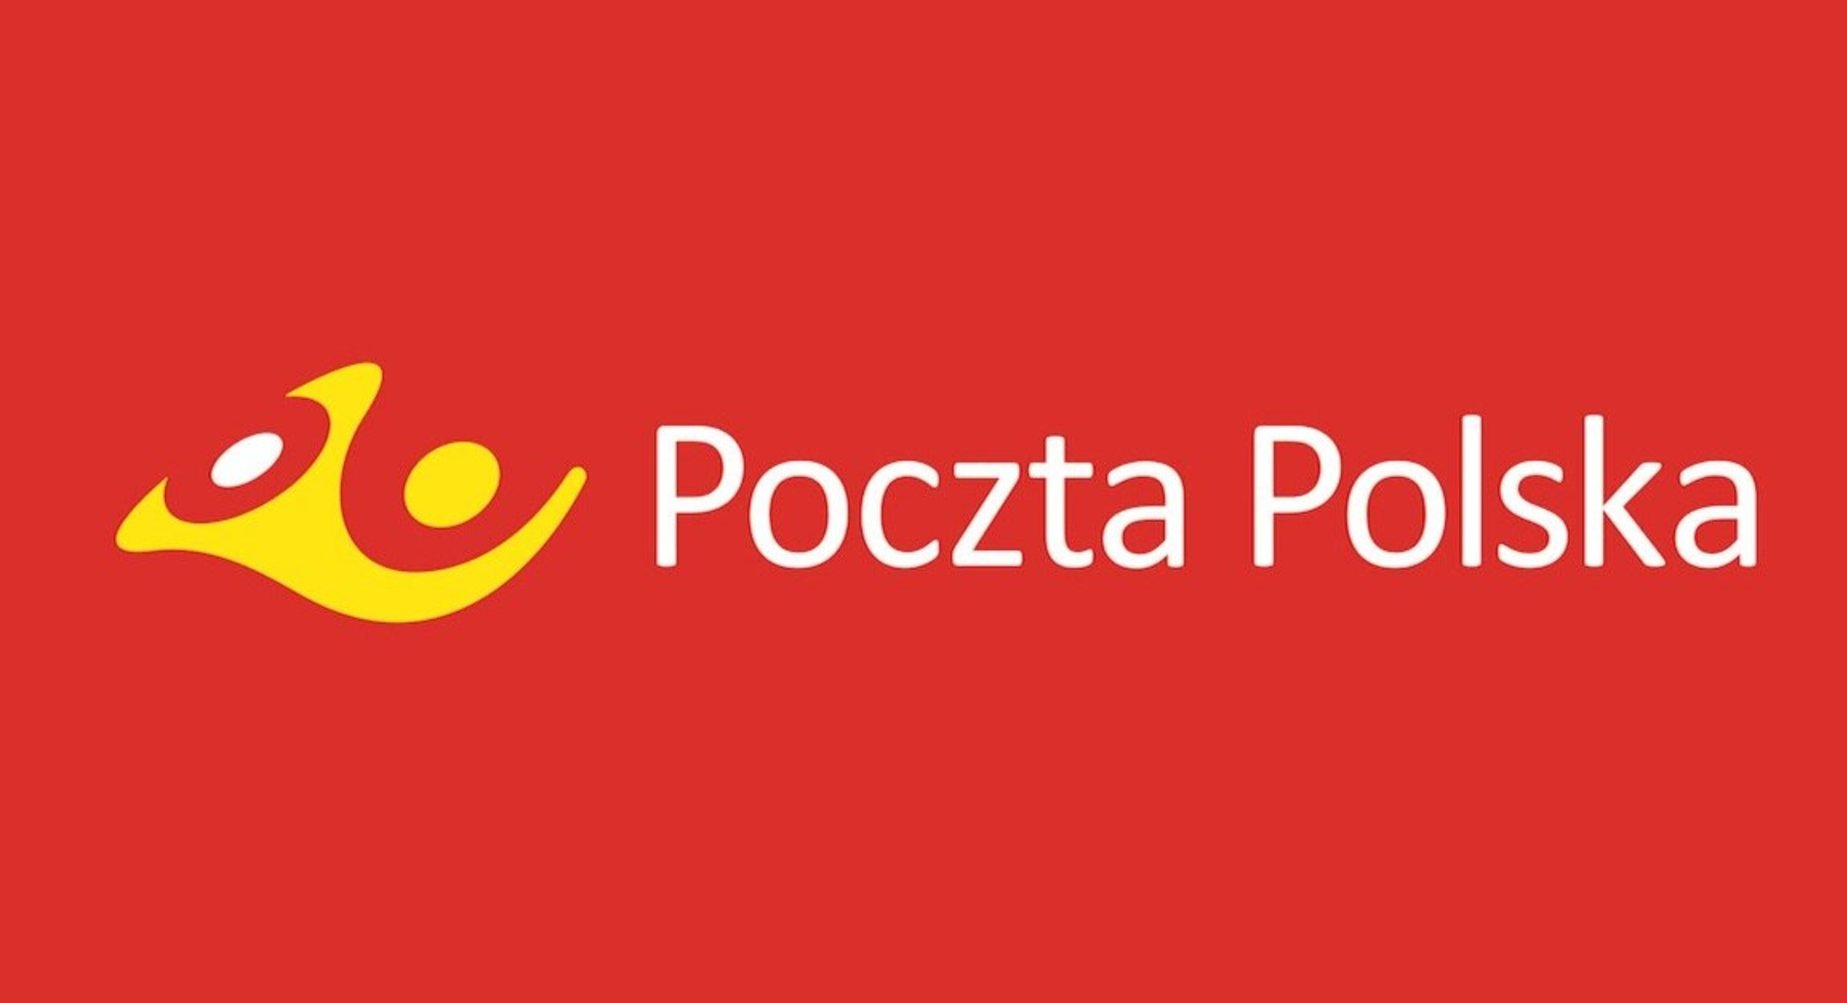 Czerwono tło z białym napisem Poczta Polska